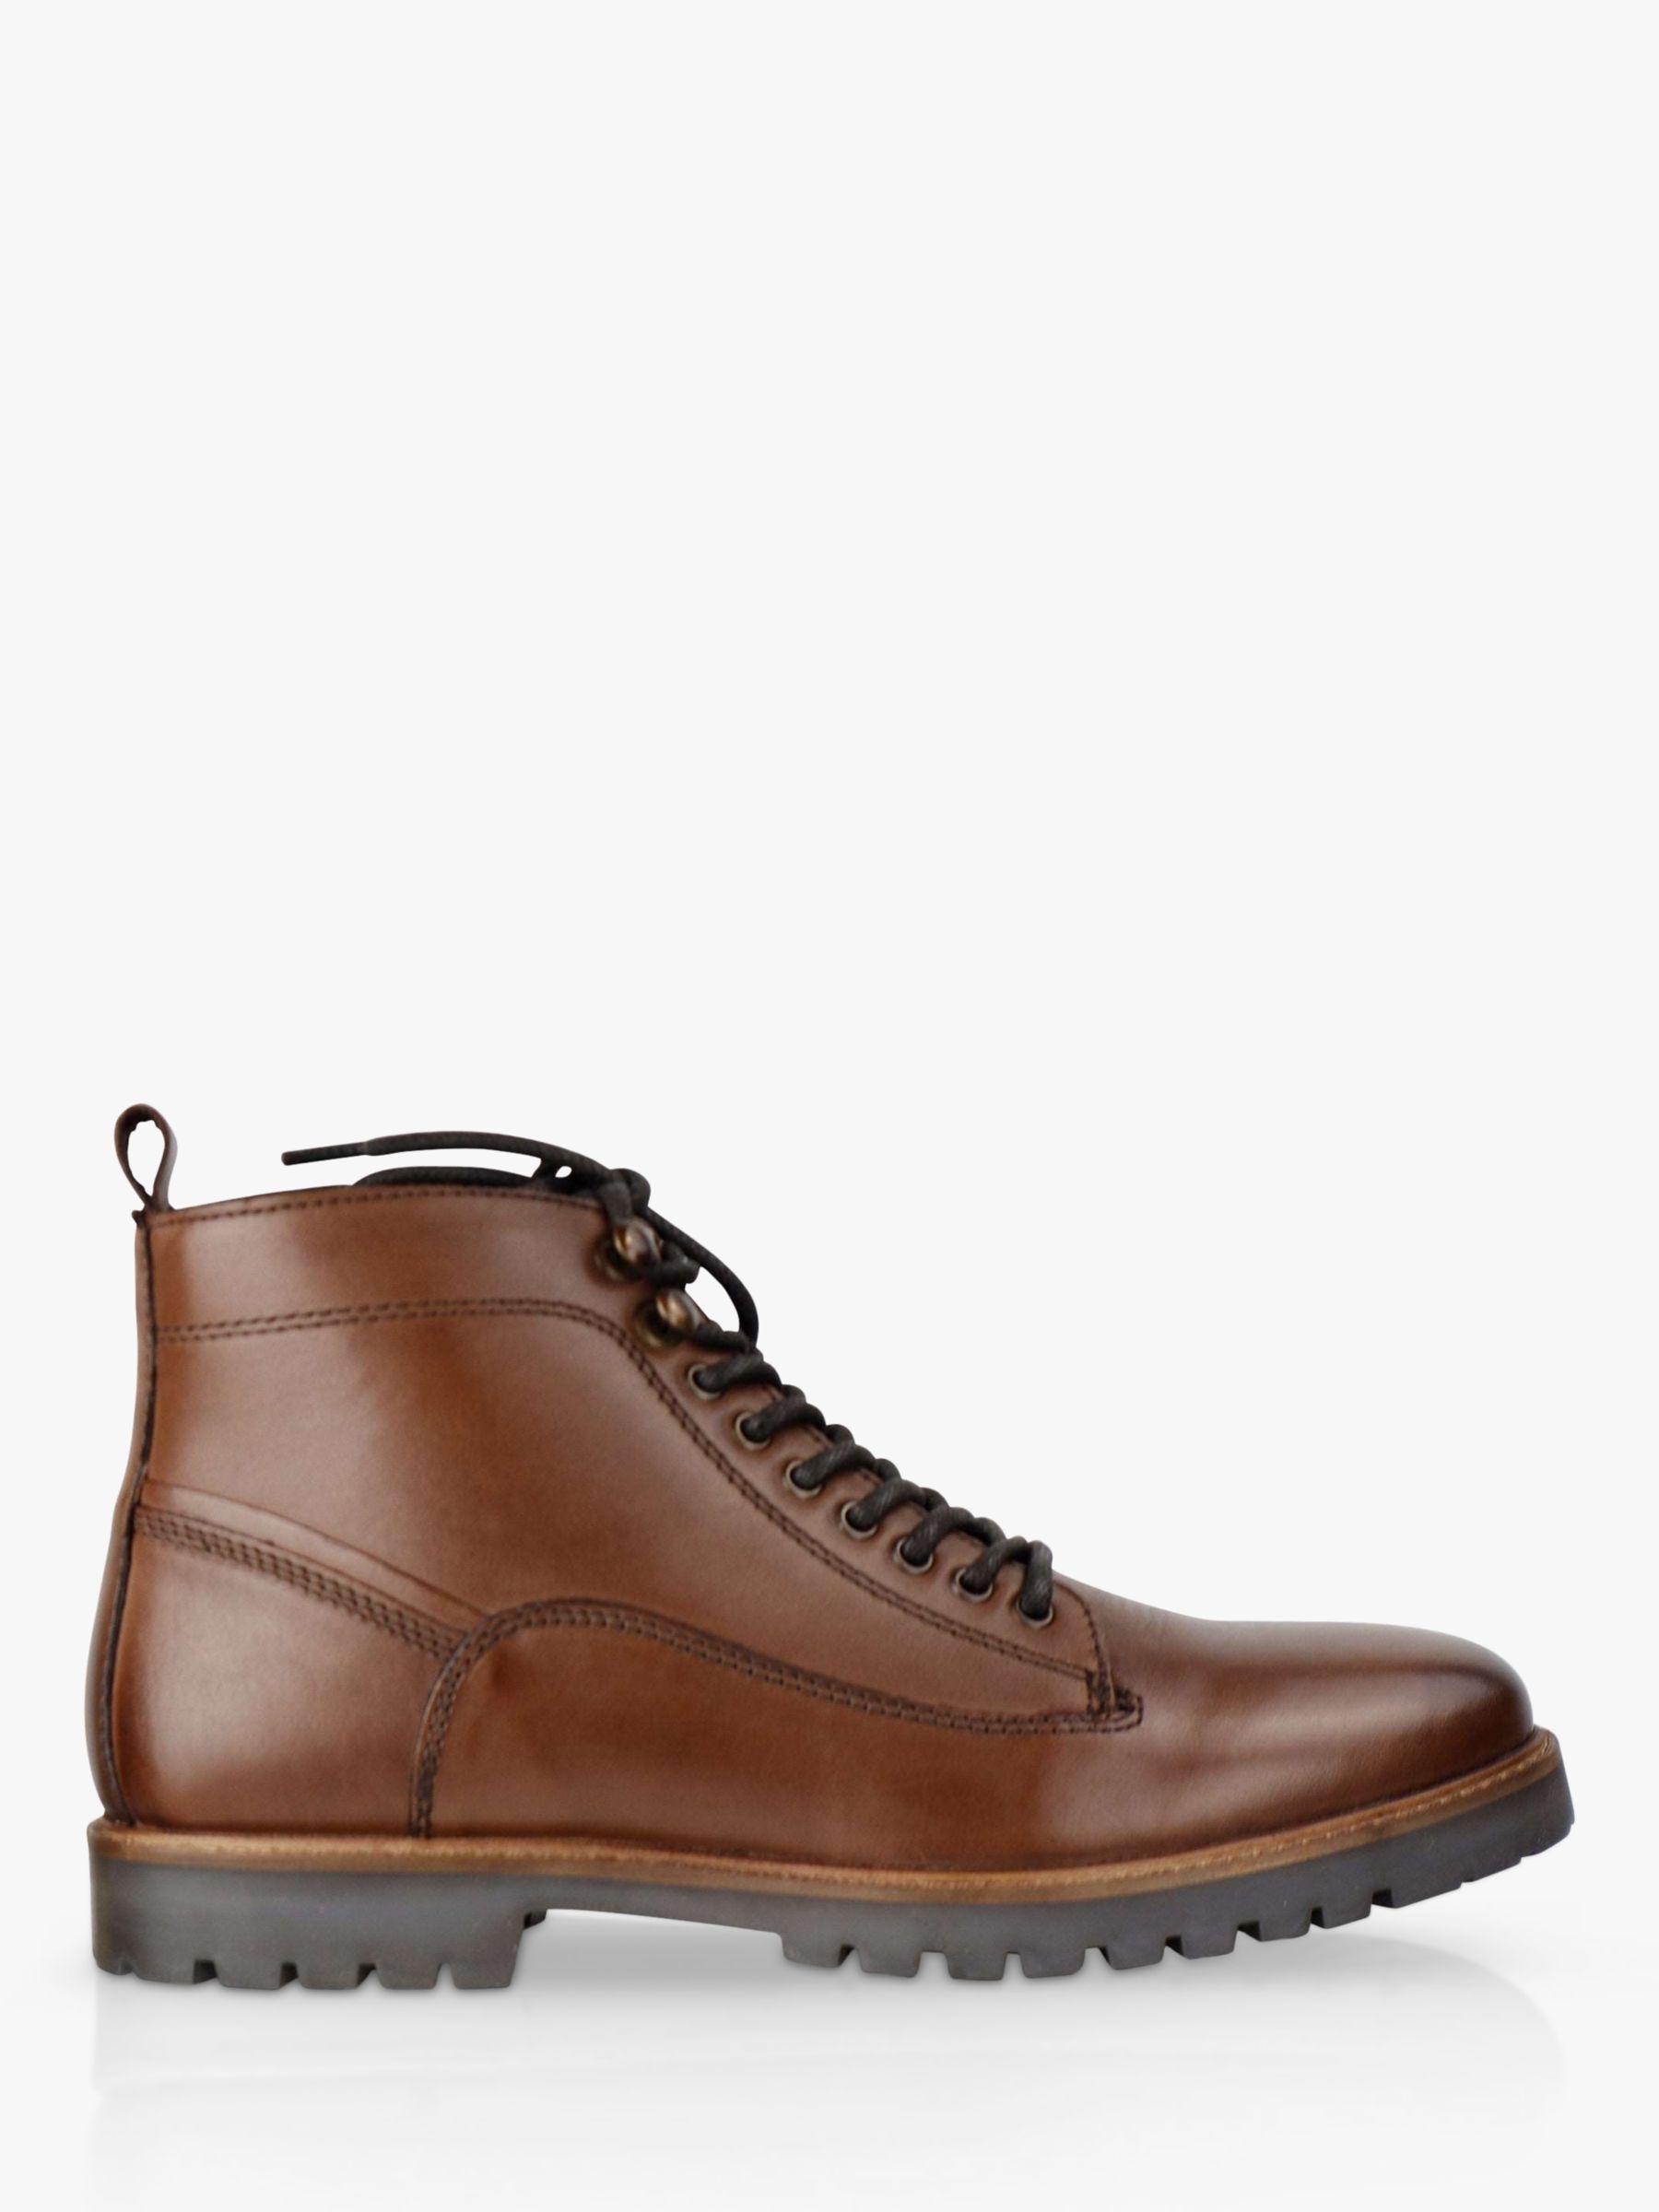 Кожаные ботинки на шнуровке Thames Silver Street London, коричневый